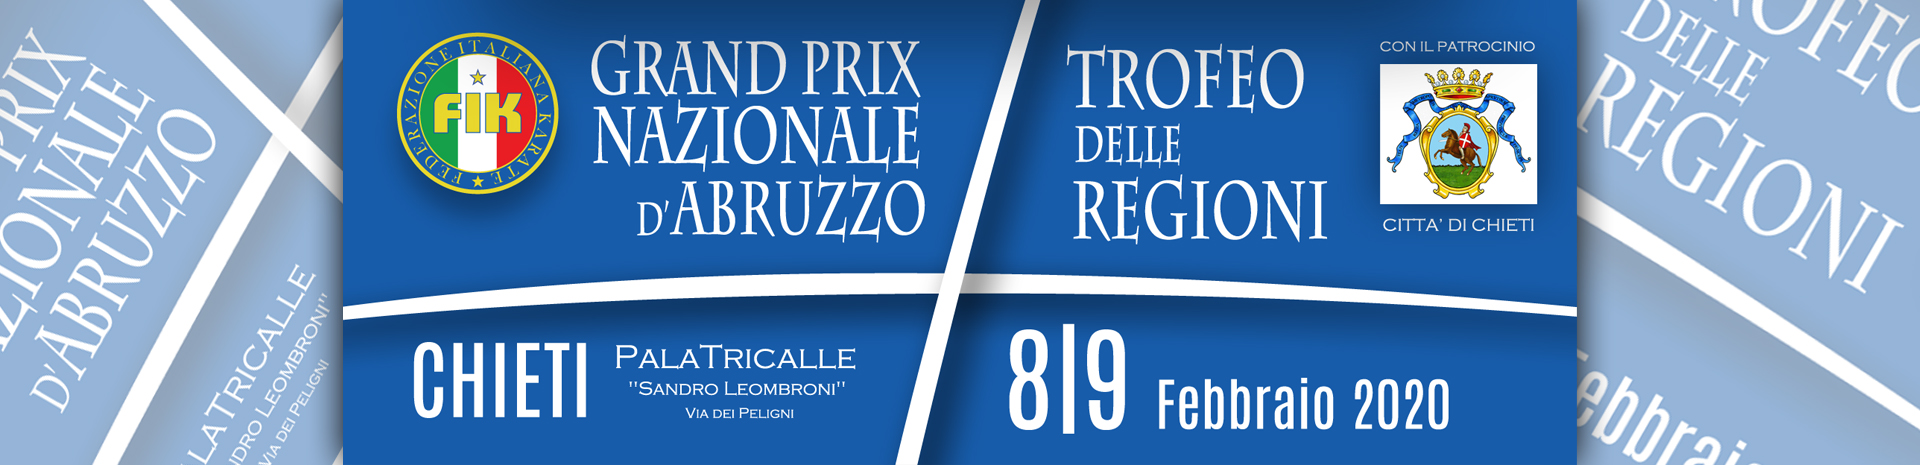 Grand Prix Nazionale d'Abruzzo 2020